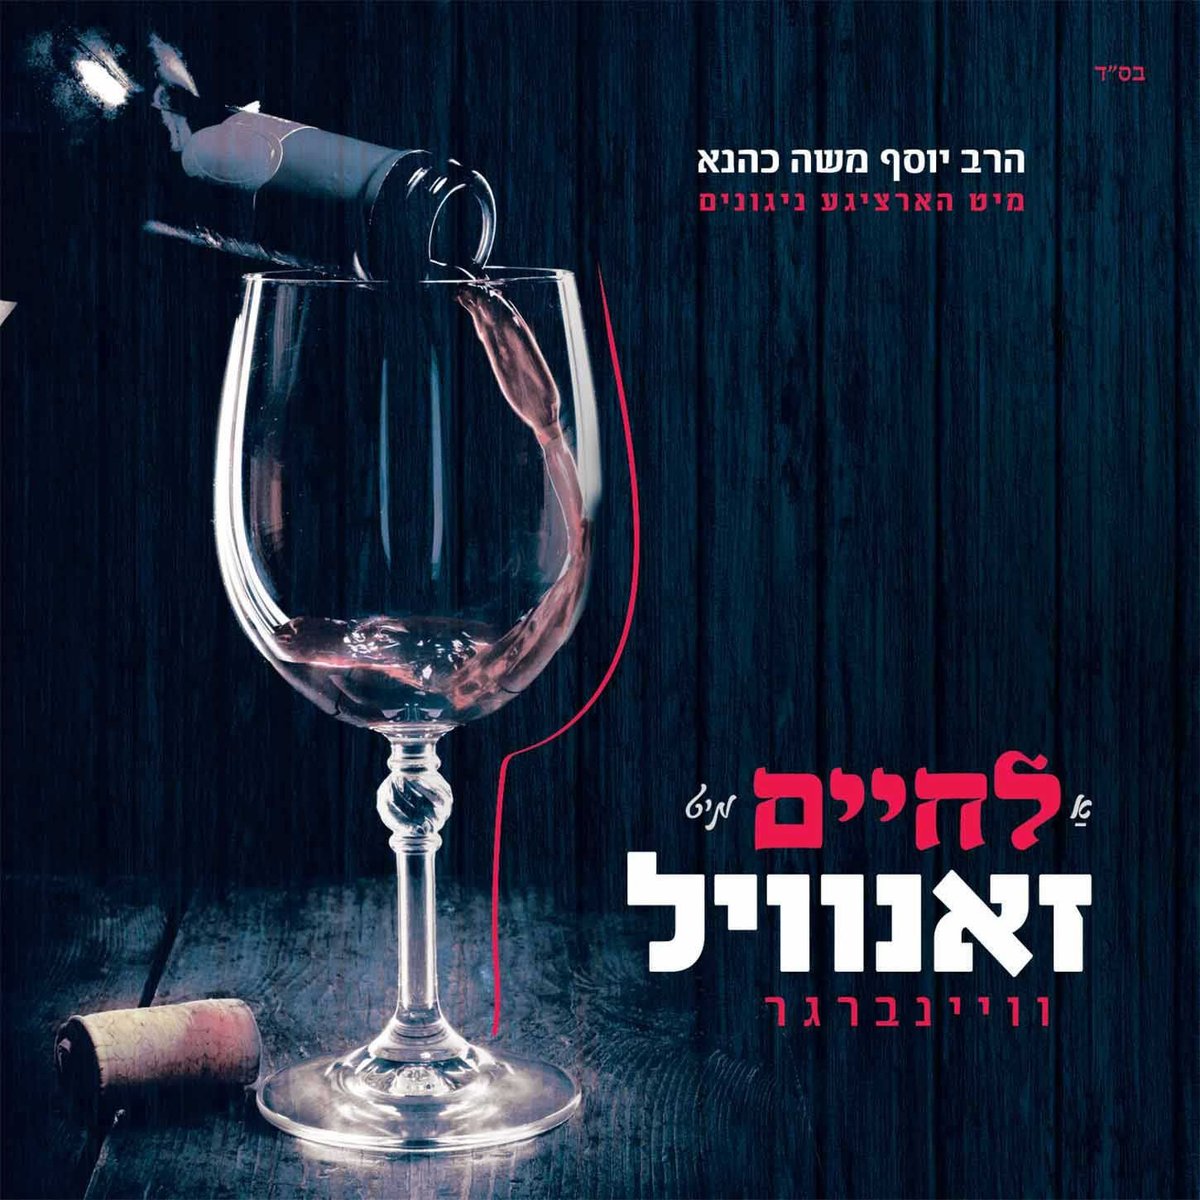 יוסף משה כהנא - לחיים מיט זאנוויל - Yosef Moshe Kahana - A Lchaim Mit Zanvil  - אלבום חדש